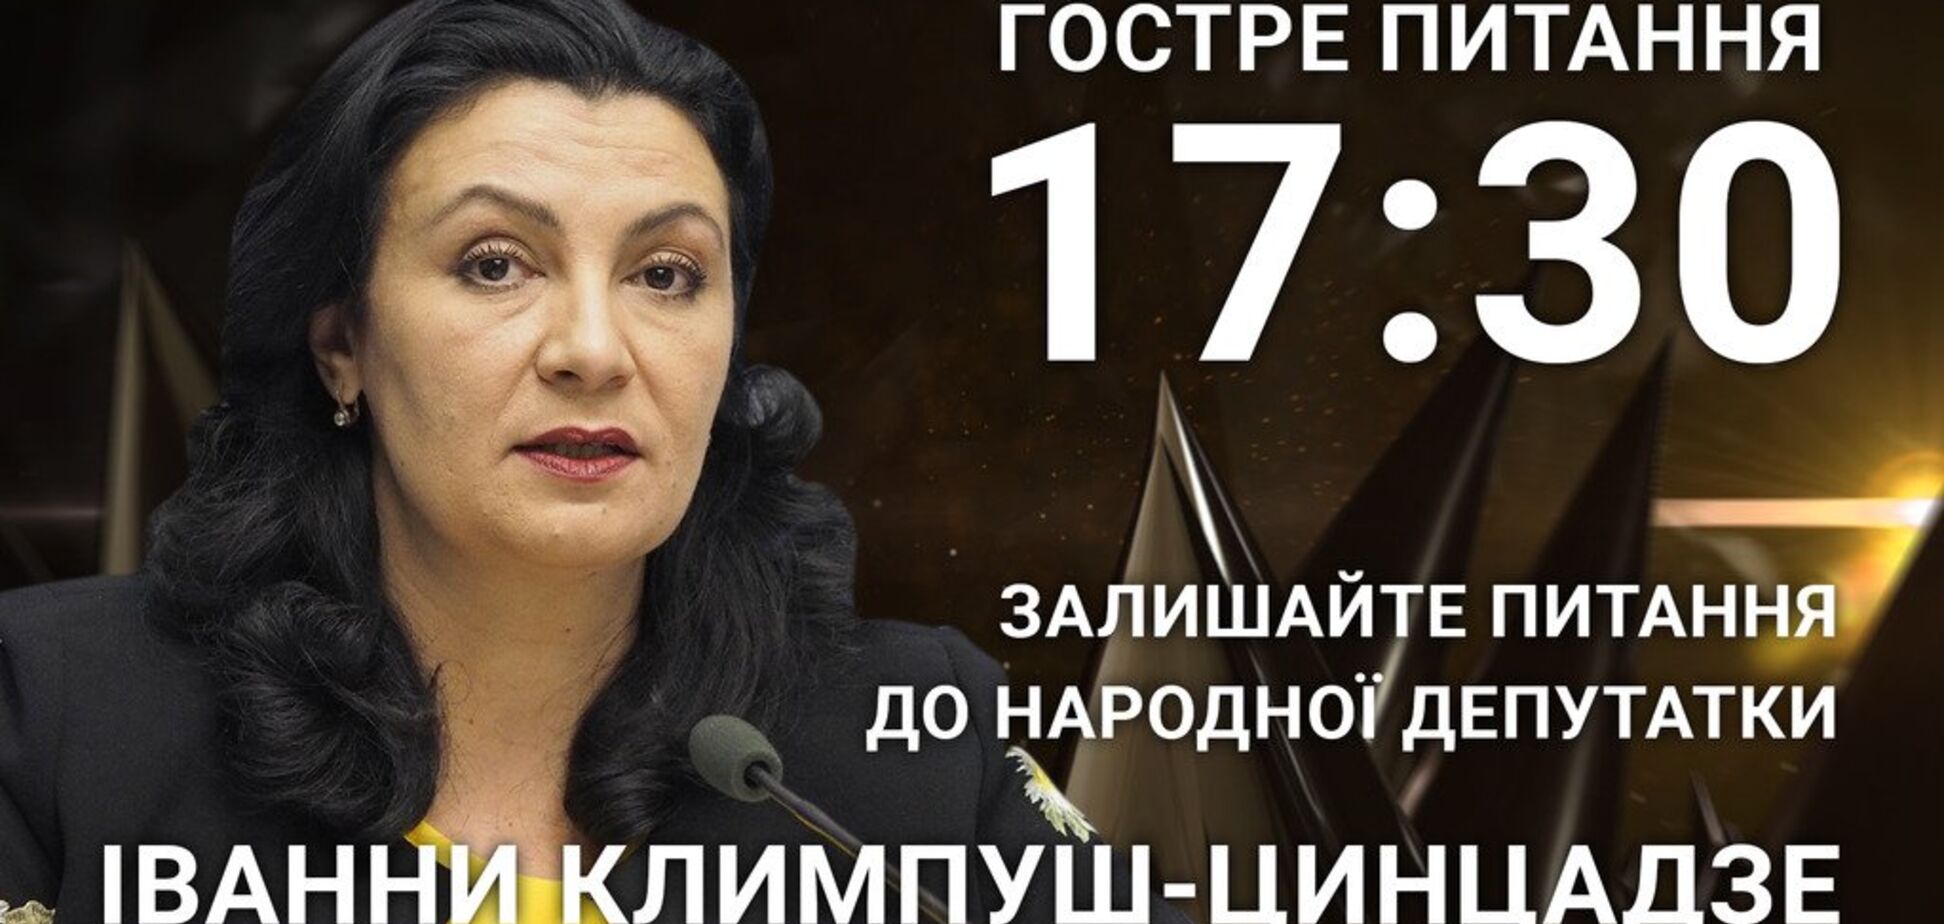 Іванна Климпуш-Цинцадзе: поставте депутатці гостре питання